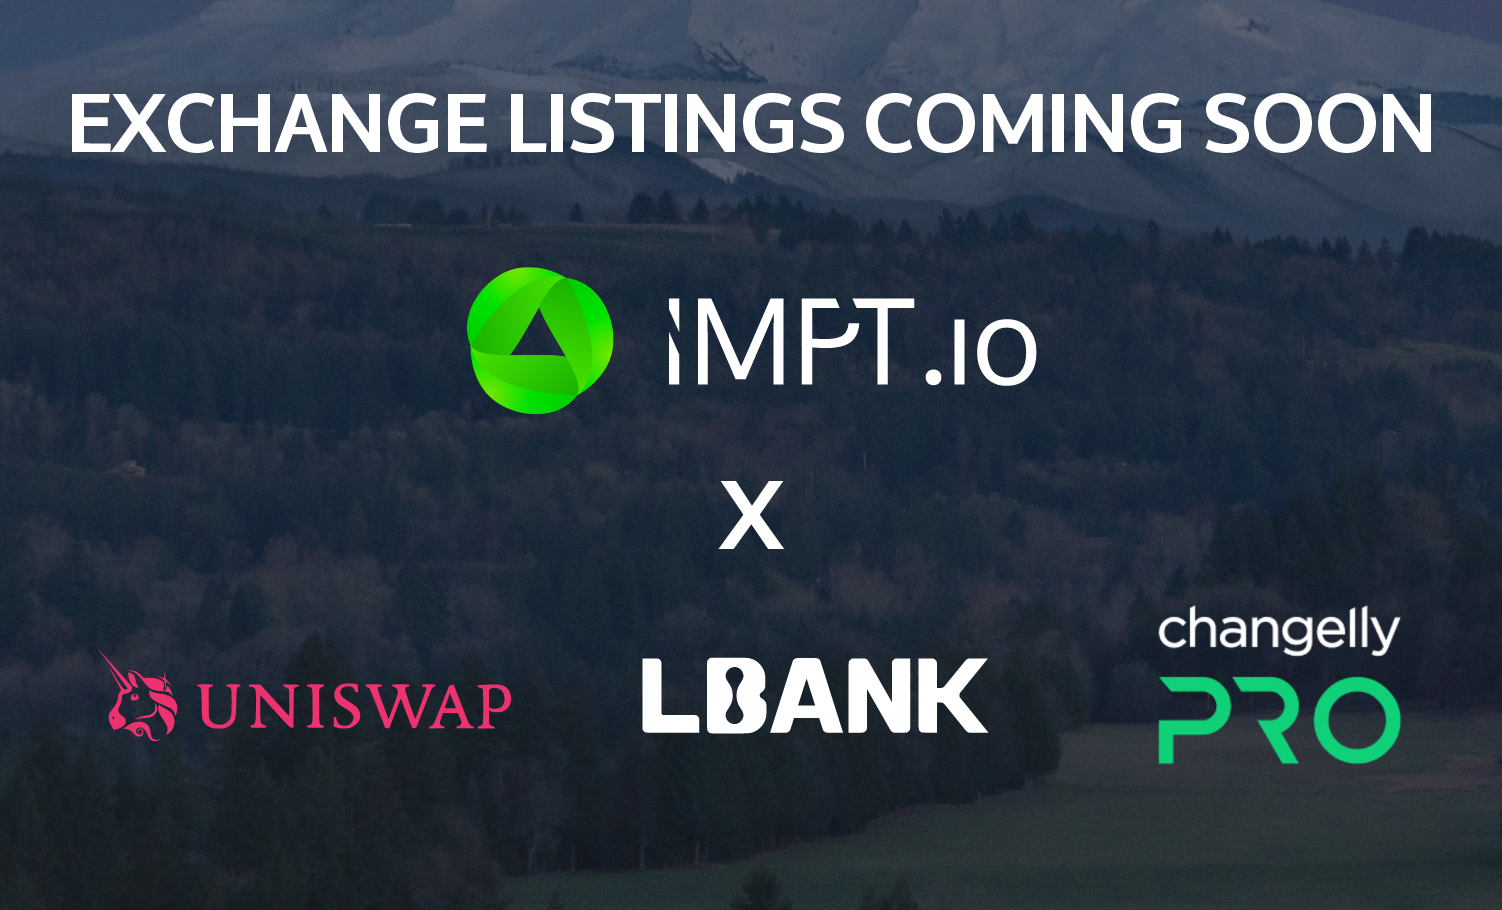 La crypto verte IMPT sera listée sur les plateformes d'échange dans 9 jours, ne ratez pas la hype !